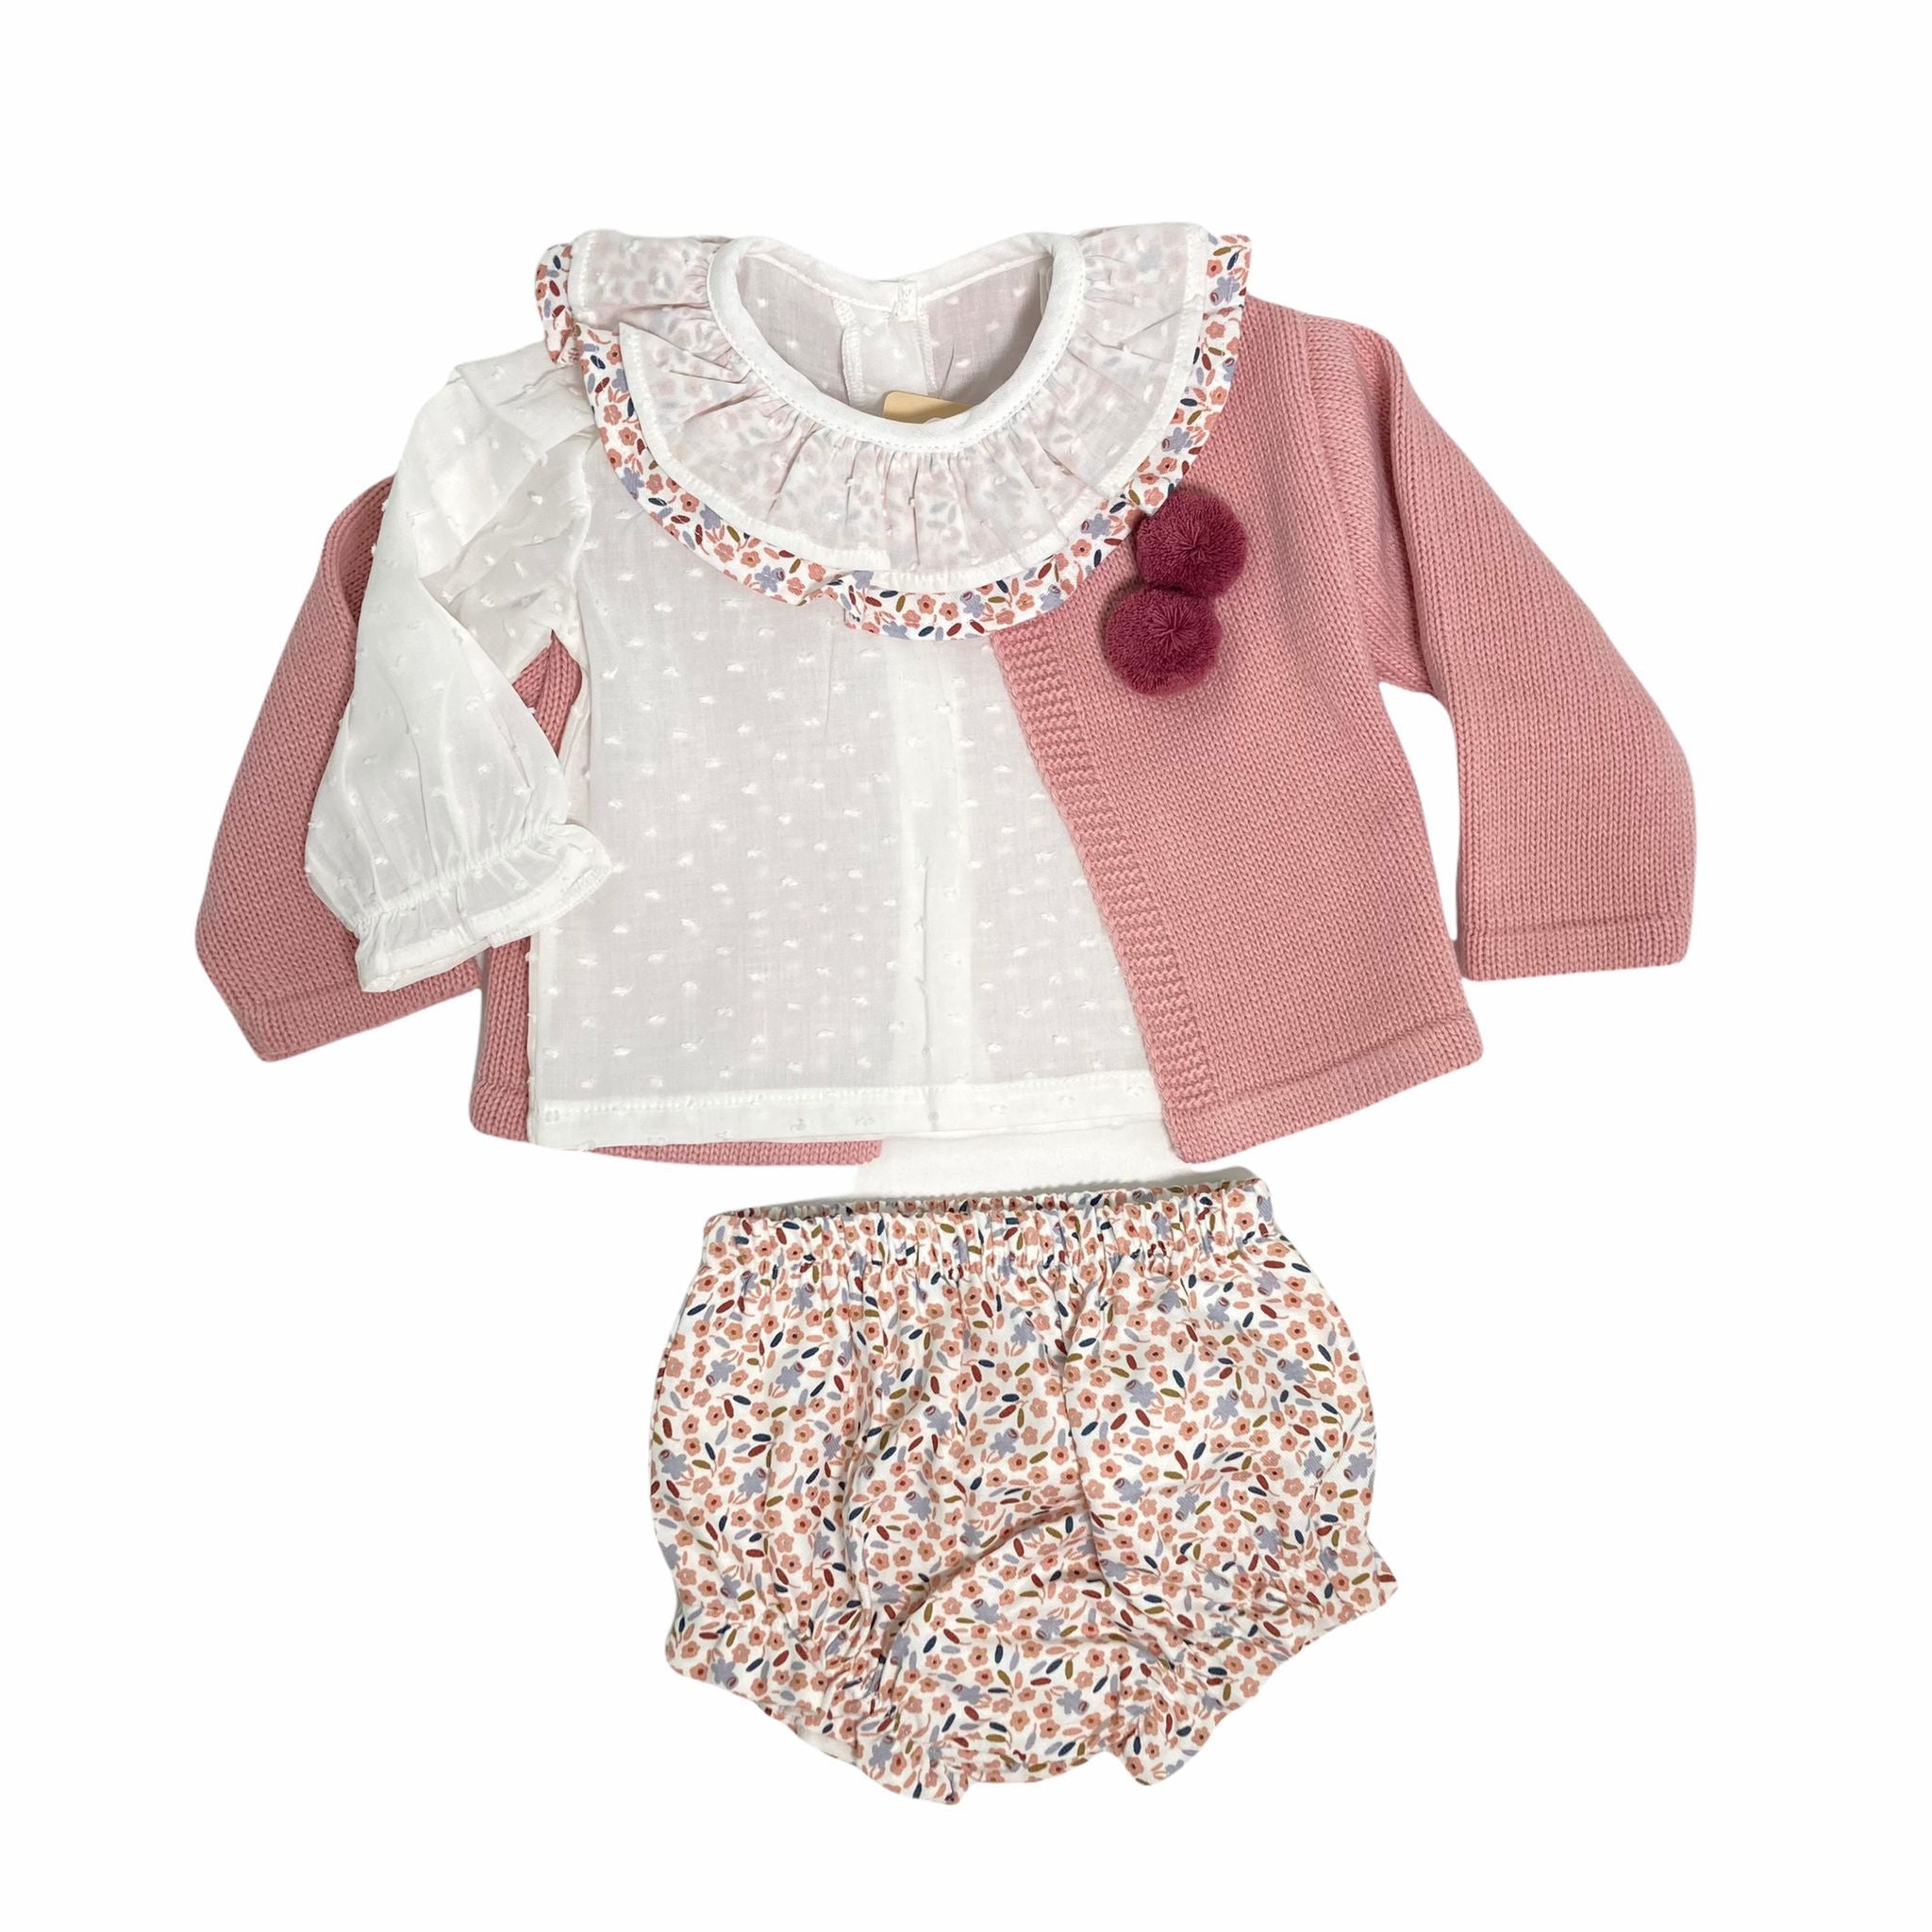 Completo 3 Pezzi In Caldo Cotone Con Culotte Rosa Antico Neonata BABY FASHION 5332 - Baby Fashion - LuxuryKids